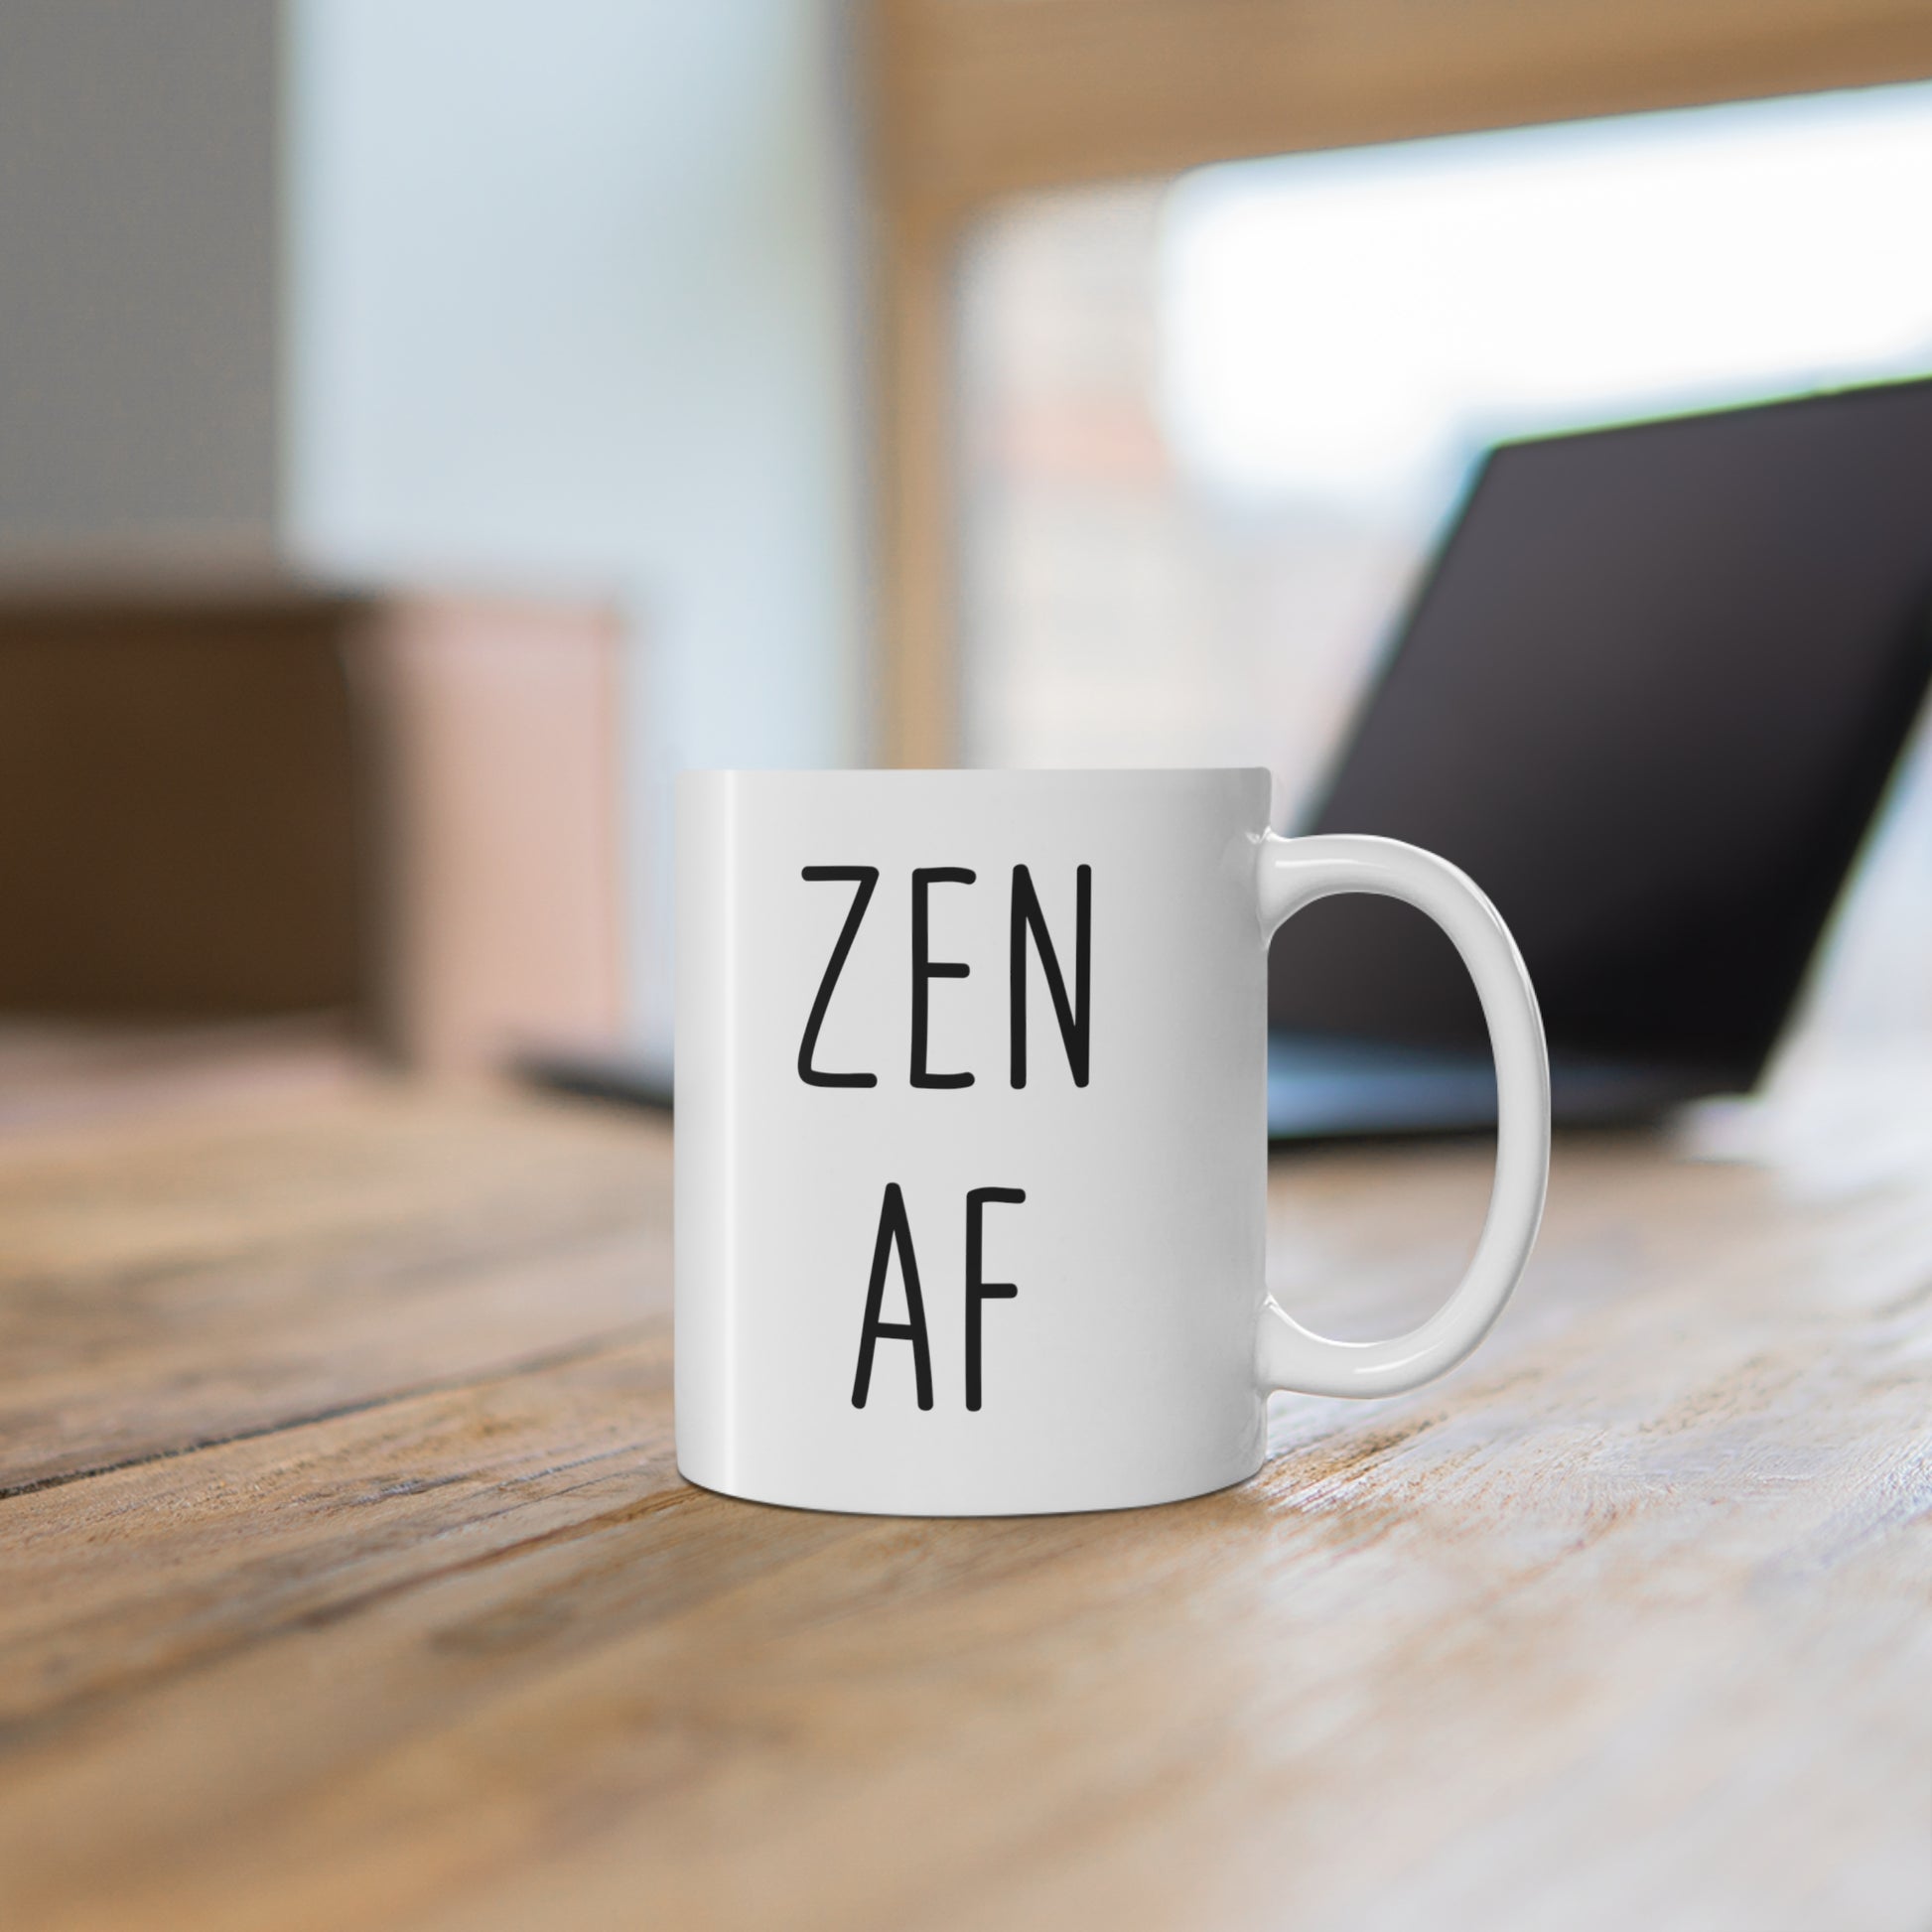 11oz ceramic mug with quote Zen AF